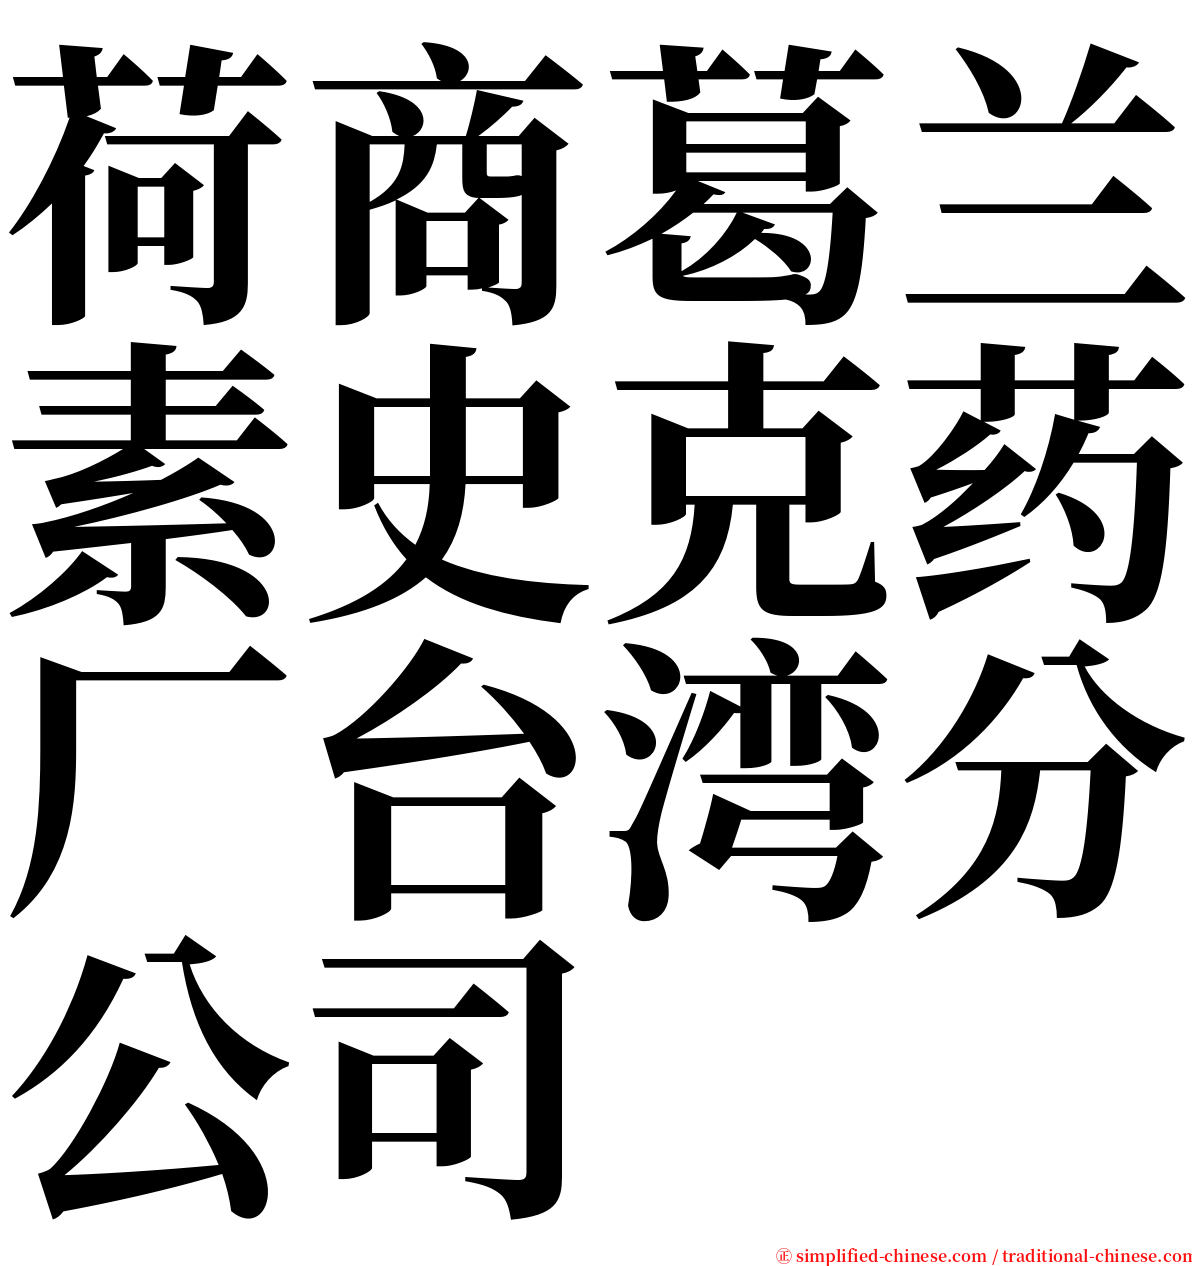 荷商葛兰素史克药厂台湾分公司 serif font